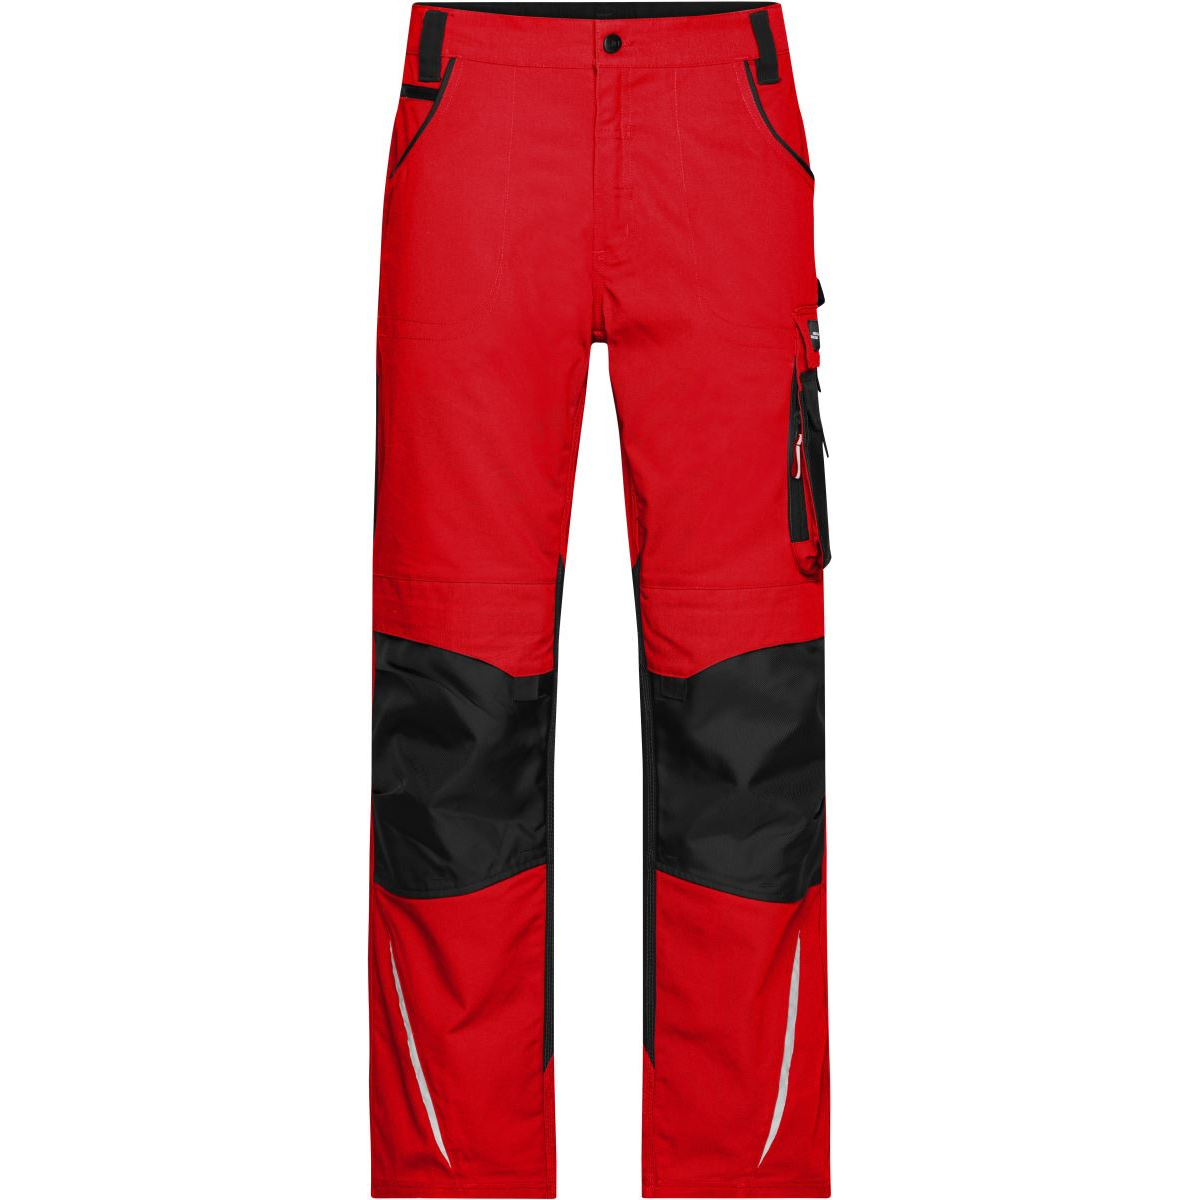 Kalhoty pracovní James & Nicholson 832 - červené-černé, 44